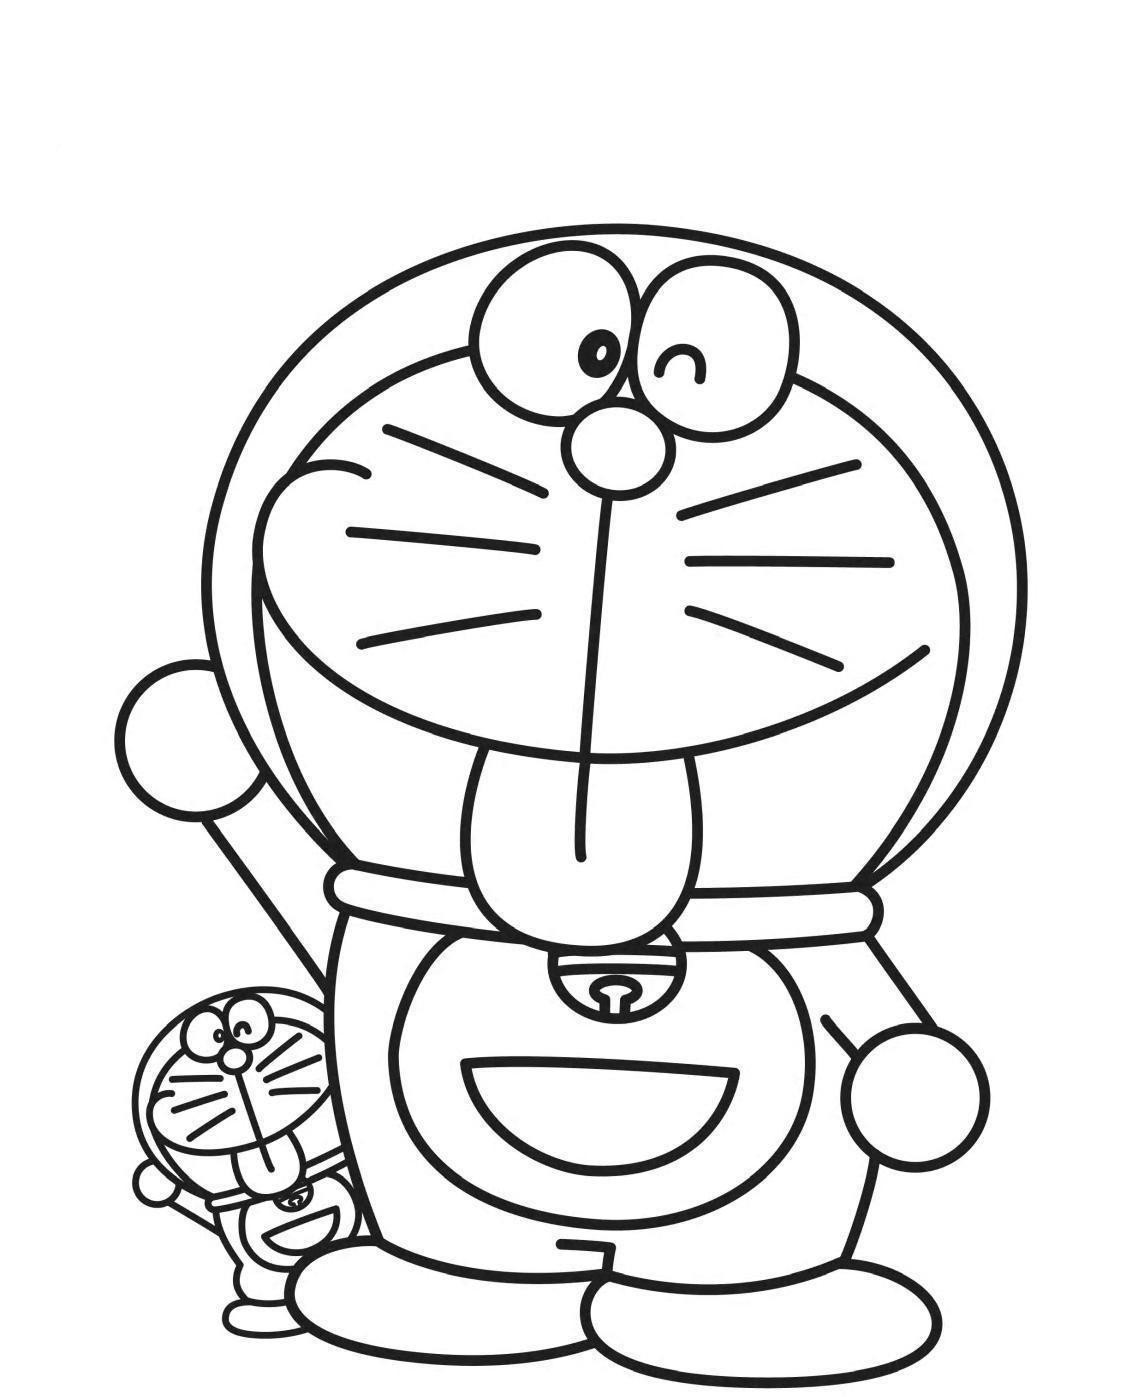 Tranh tô màu Doraemon dễ thương đẹp